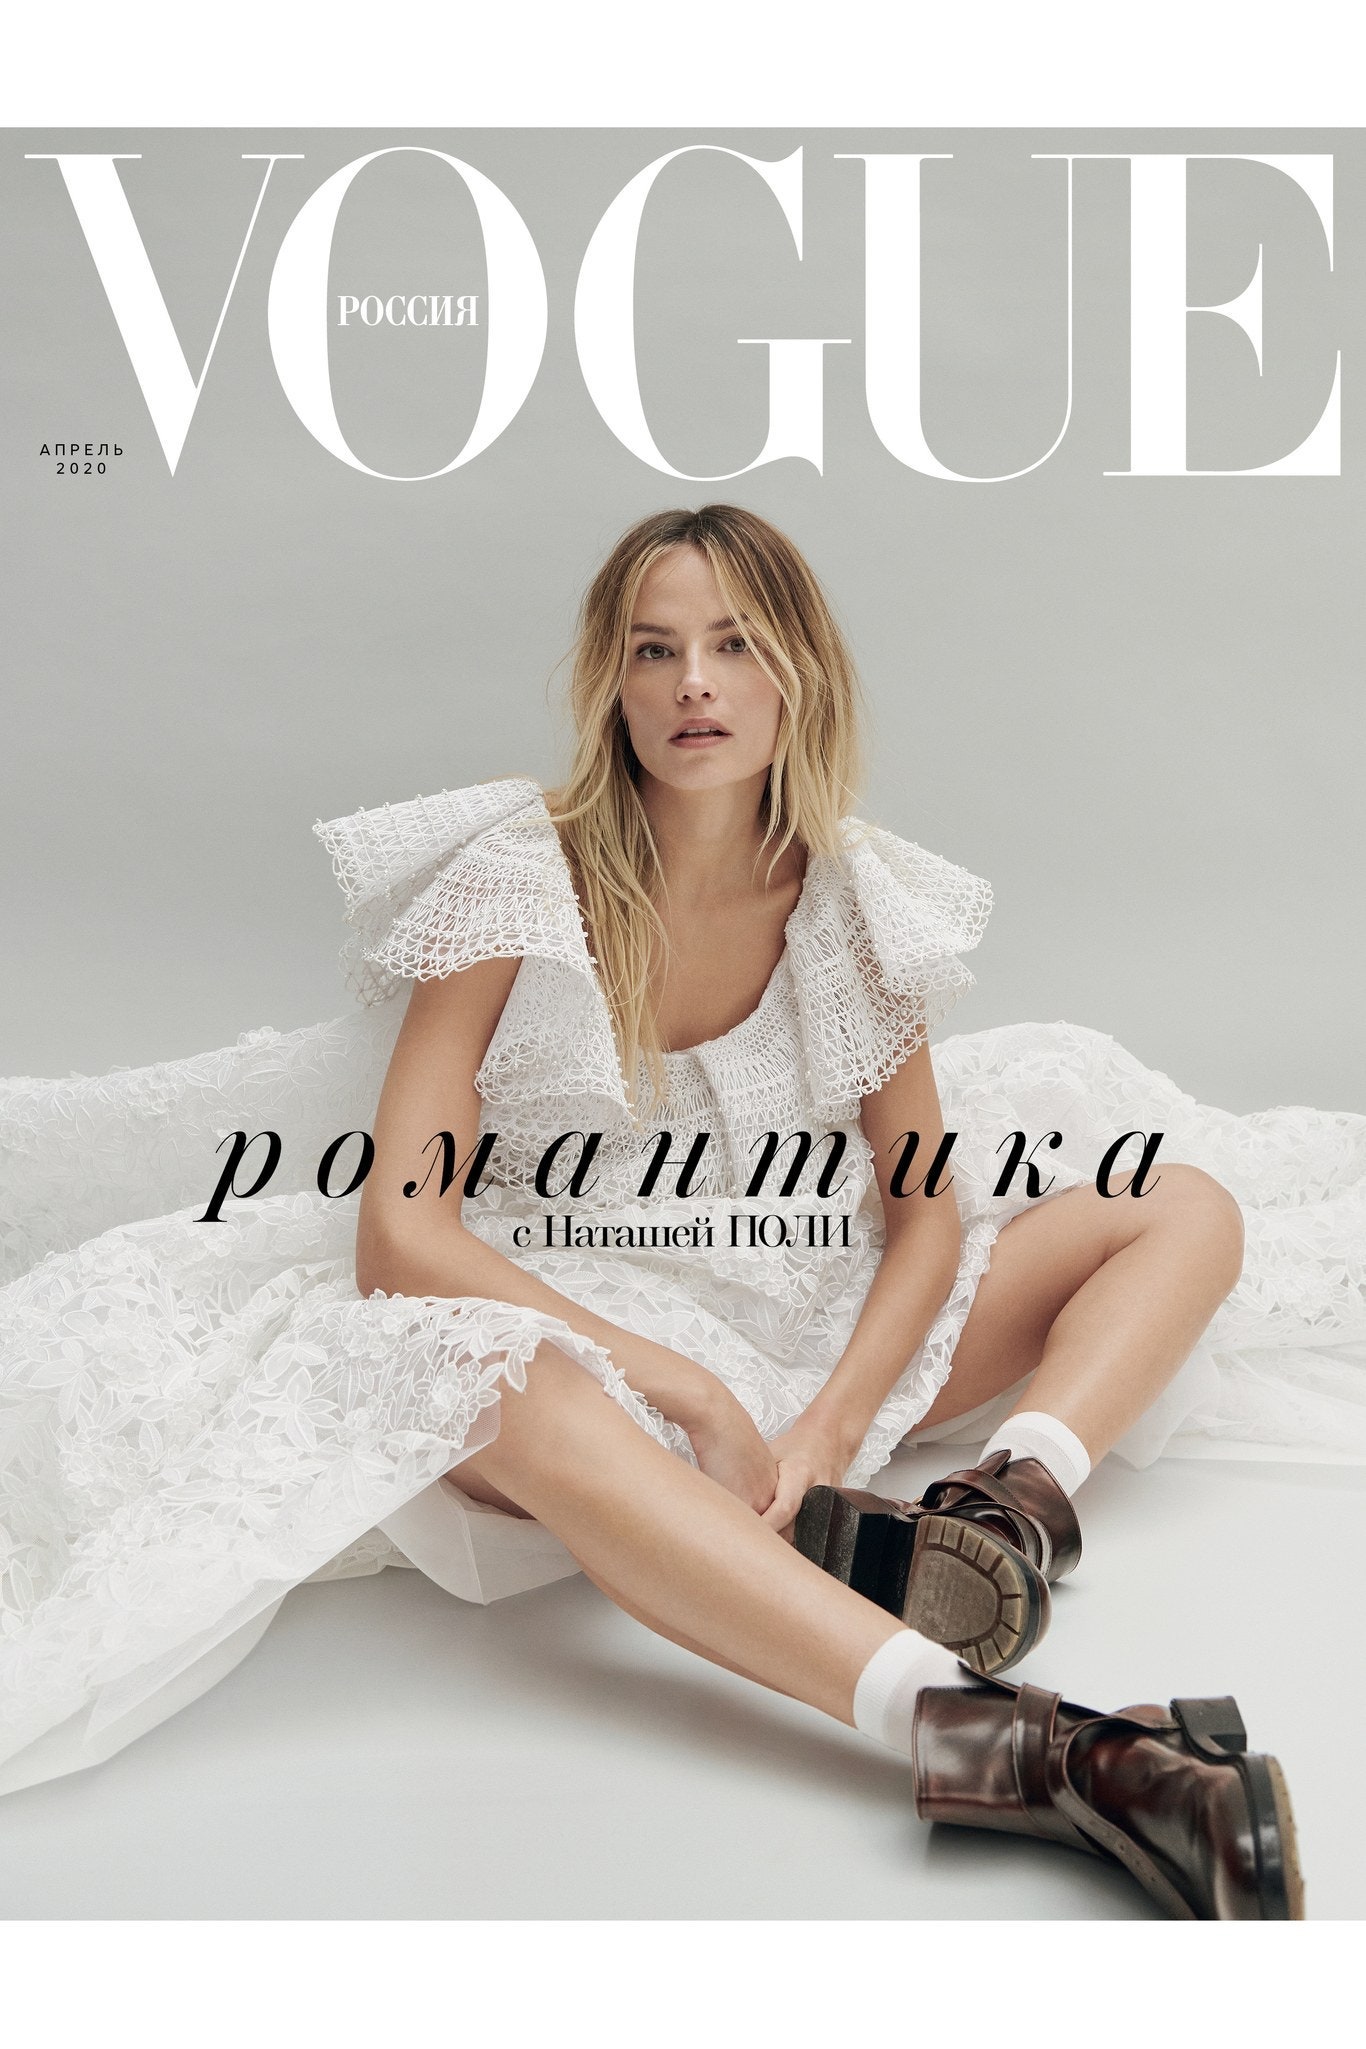 Русский Vogue теперь можно читать бесплатно — в digitalверсии